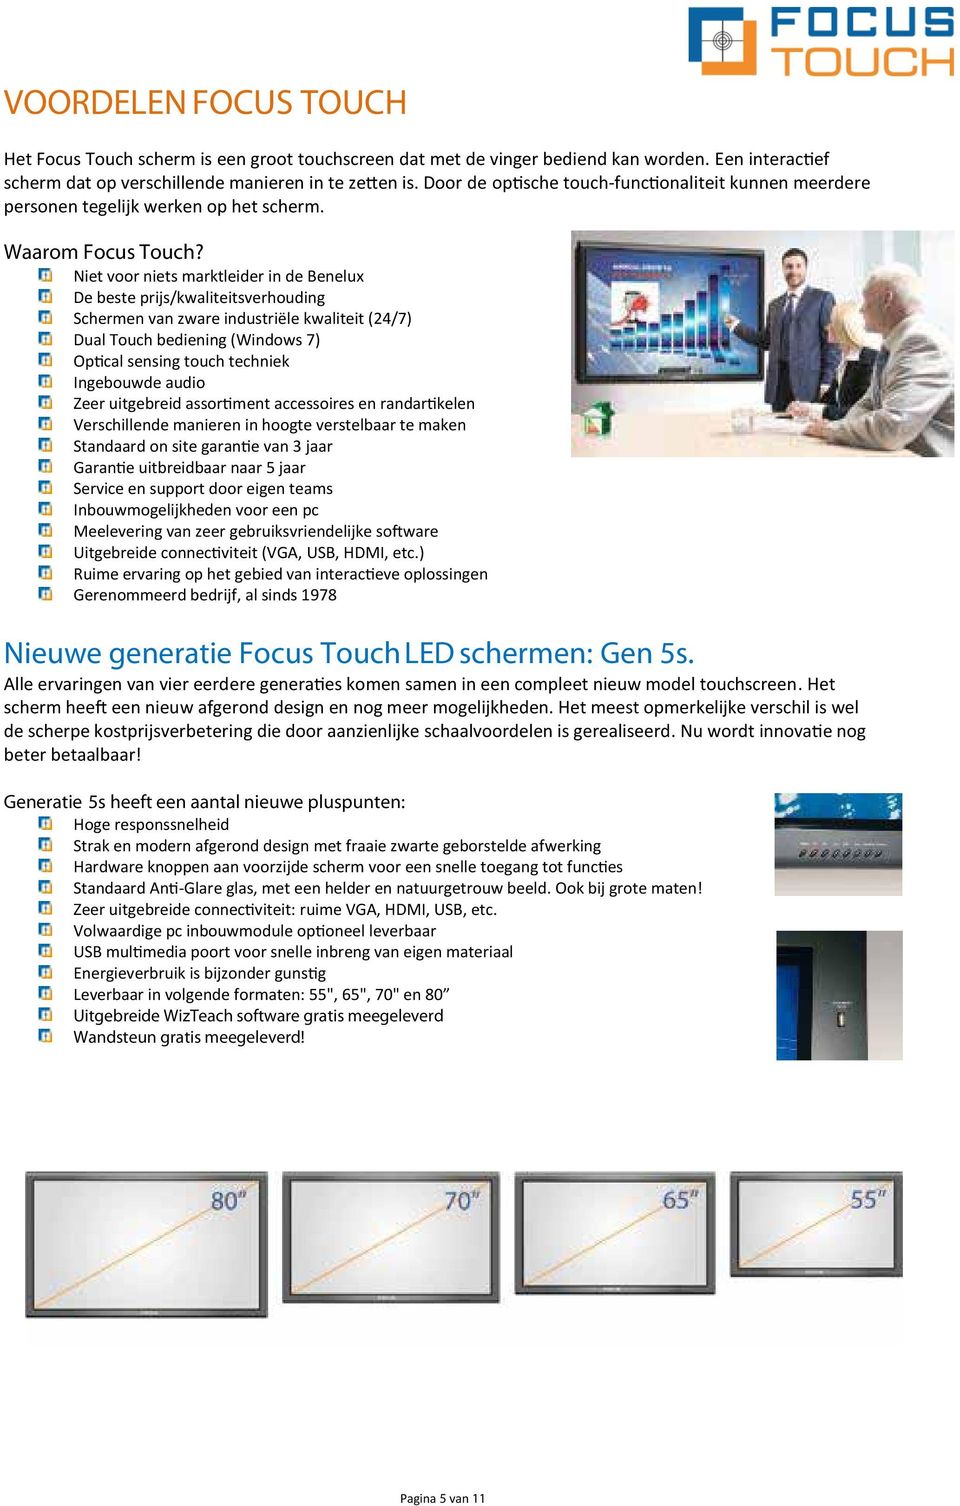 Niet voor niets marktleider in de Benelux De beste prijs/kwaliteitsverhouding Schermen van zware industriële kwaliteit (24/7) Dual Touch bediening (Windows 7) Optical sensing touch techniek